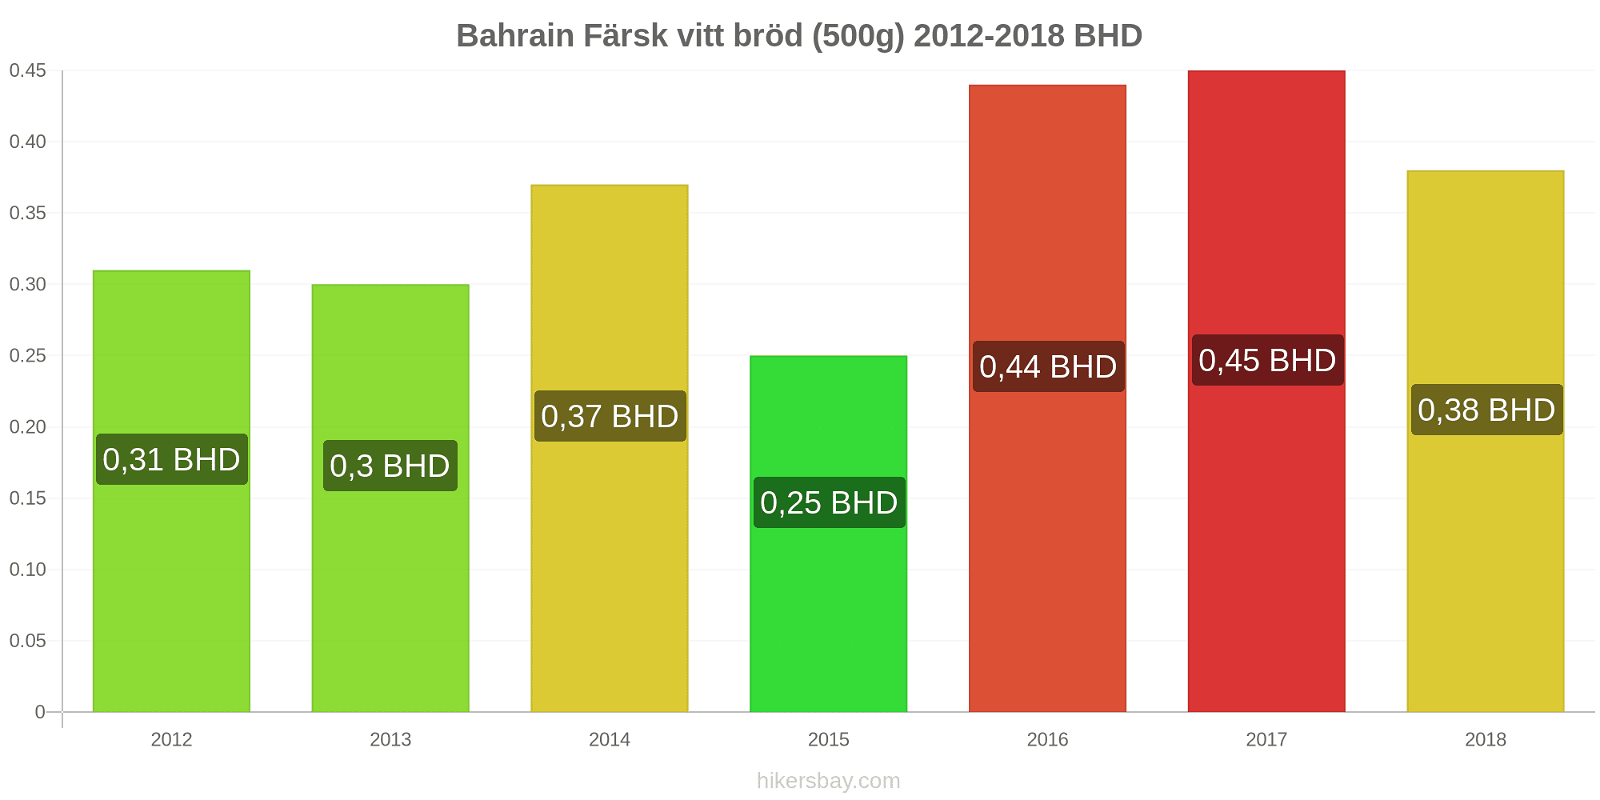 Bahrain prisändringar Färsk vitt bröd (500g) hikersbay.com